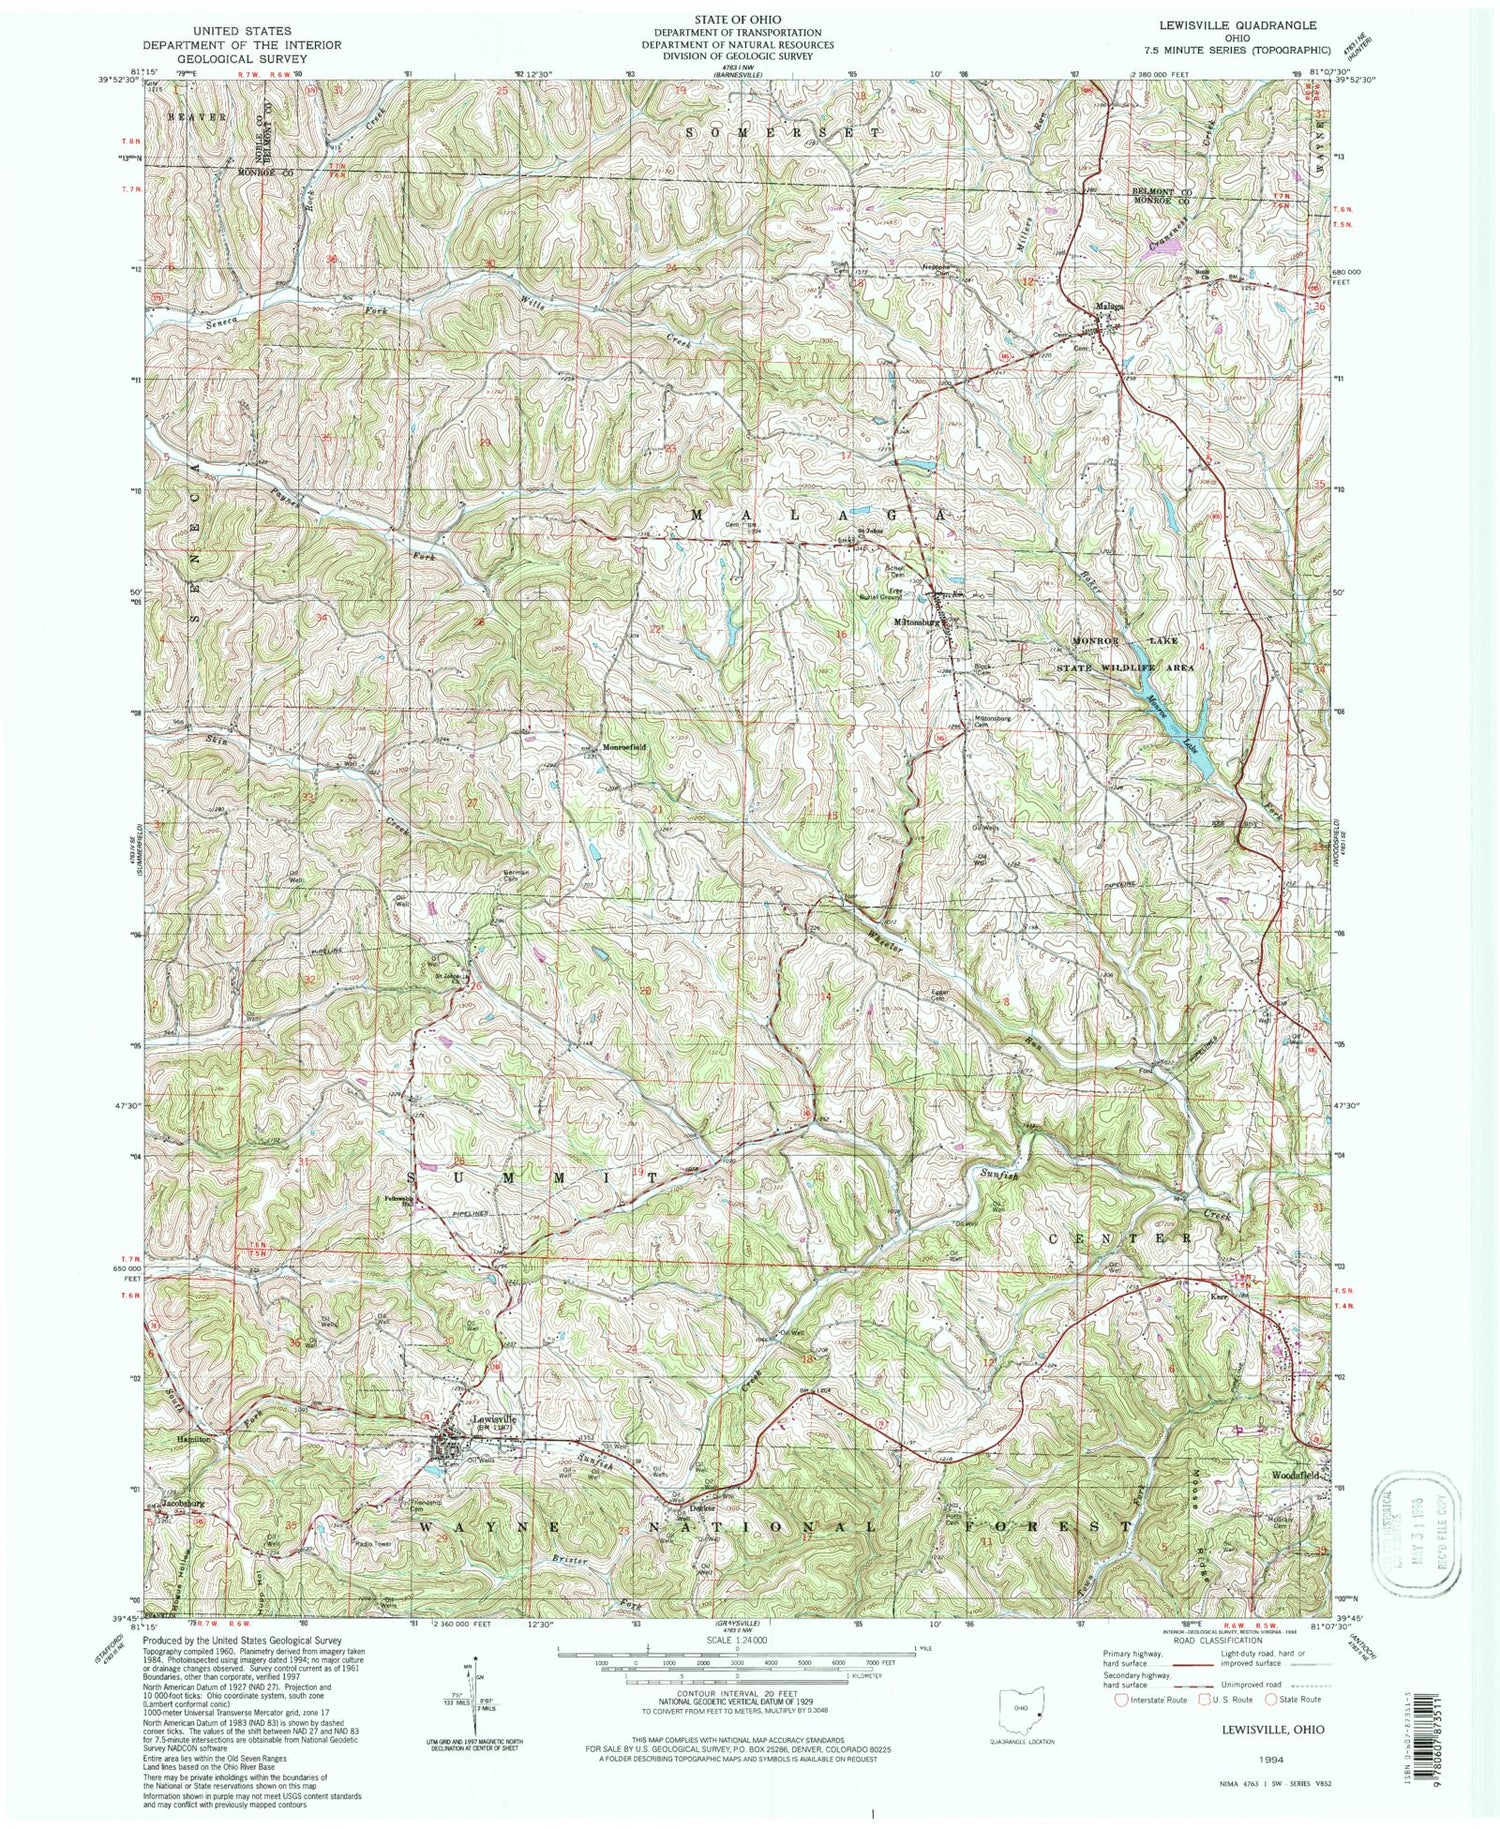 Classic USGS Lewisville Ohio 7.5'x7.5' Topo Map Image